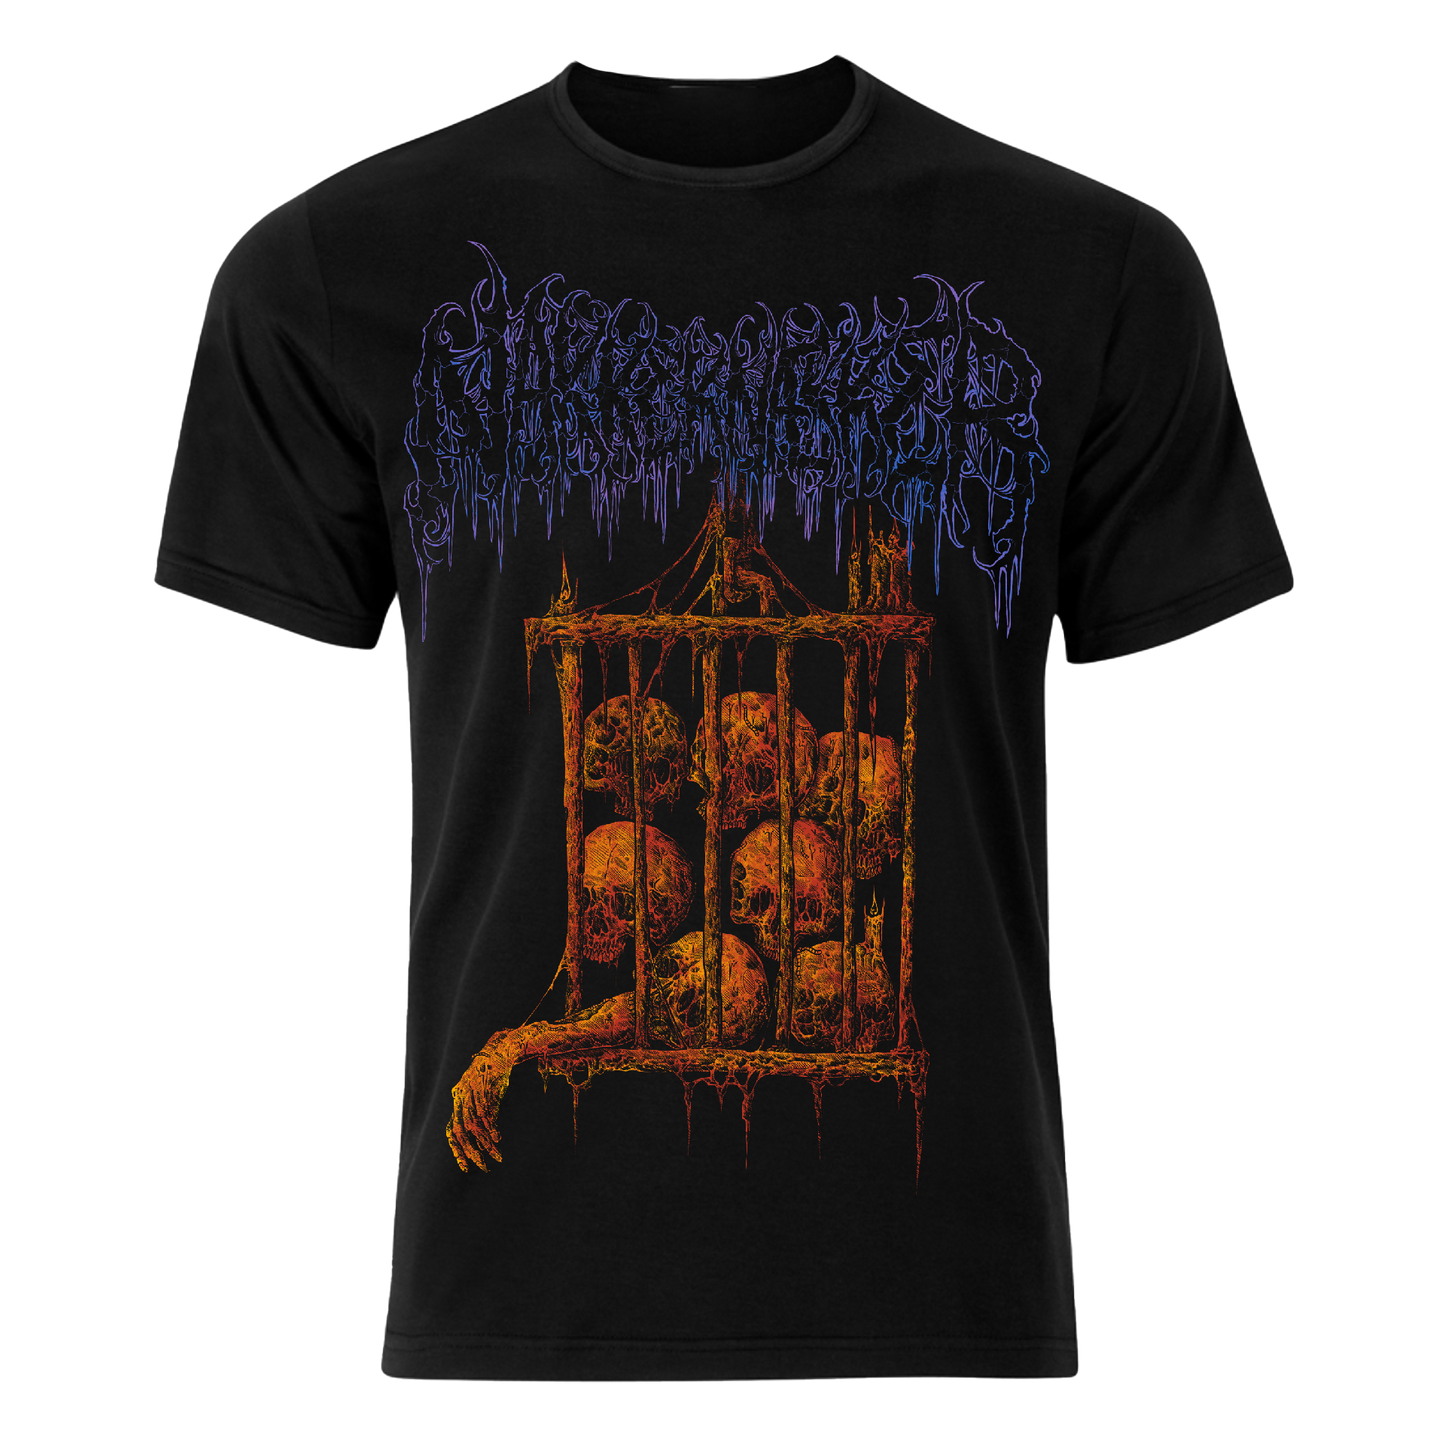 Nakkeknaekker "cage" t-shirt (black)